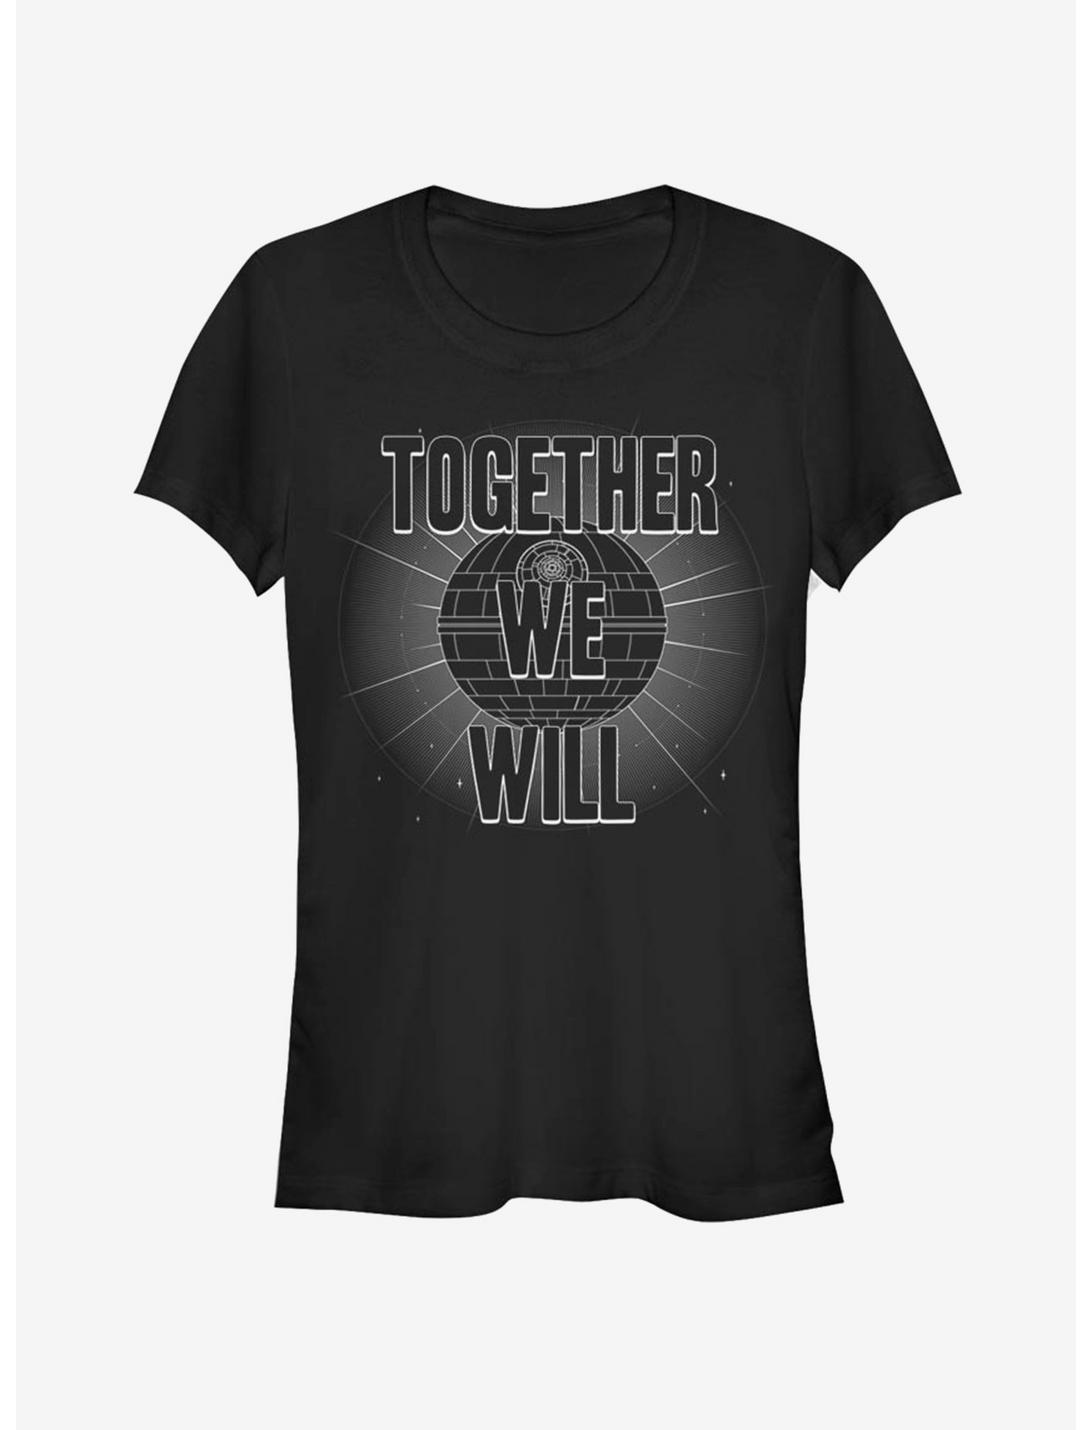 Star Wars Together We Will Girls T-Shirt, BLACK, hi-res